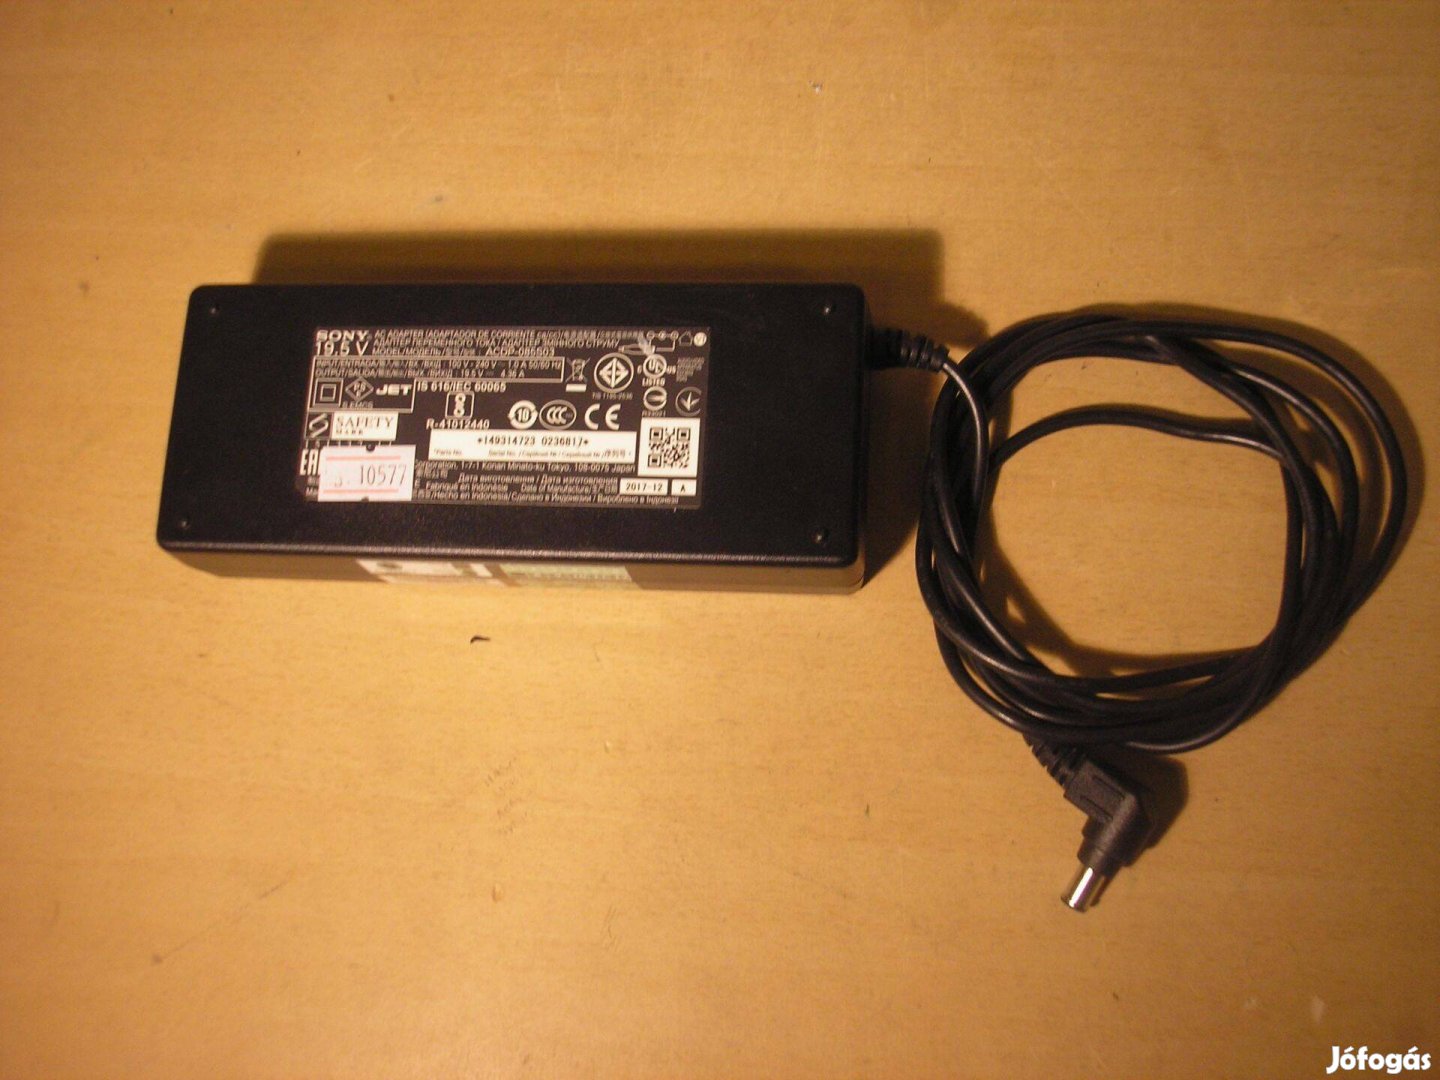 10577 Sony 19.5V 4.36A 85W 6/4/1,5mm tápegység adapter töltő LCD LED T